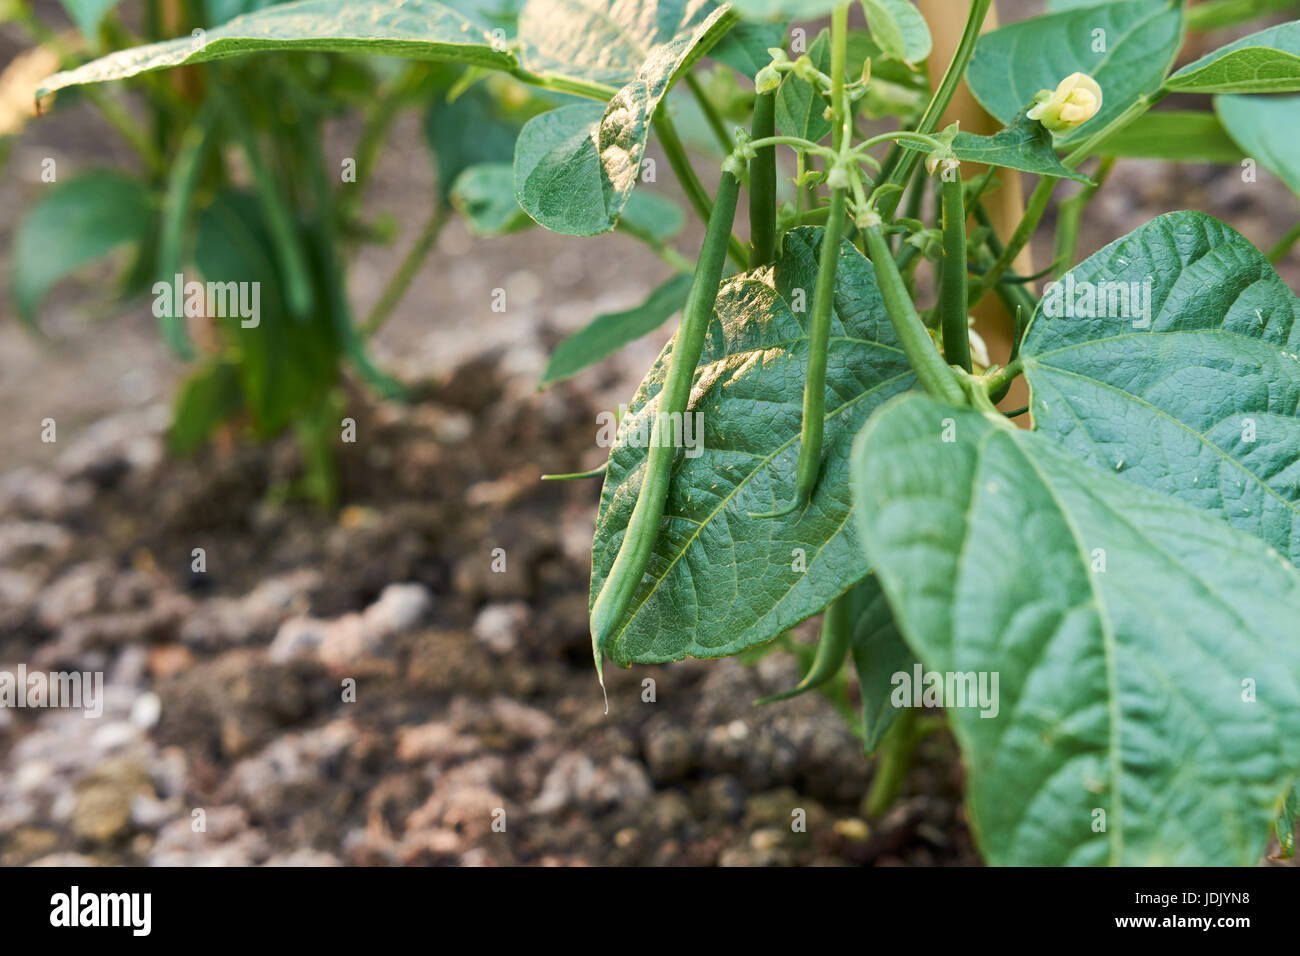 Nana piante di fagiolo "Ferrari" crescente in compost-ricco terreno in un orto, UK. Foto Stock